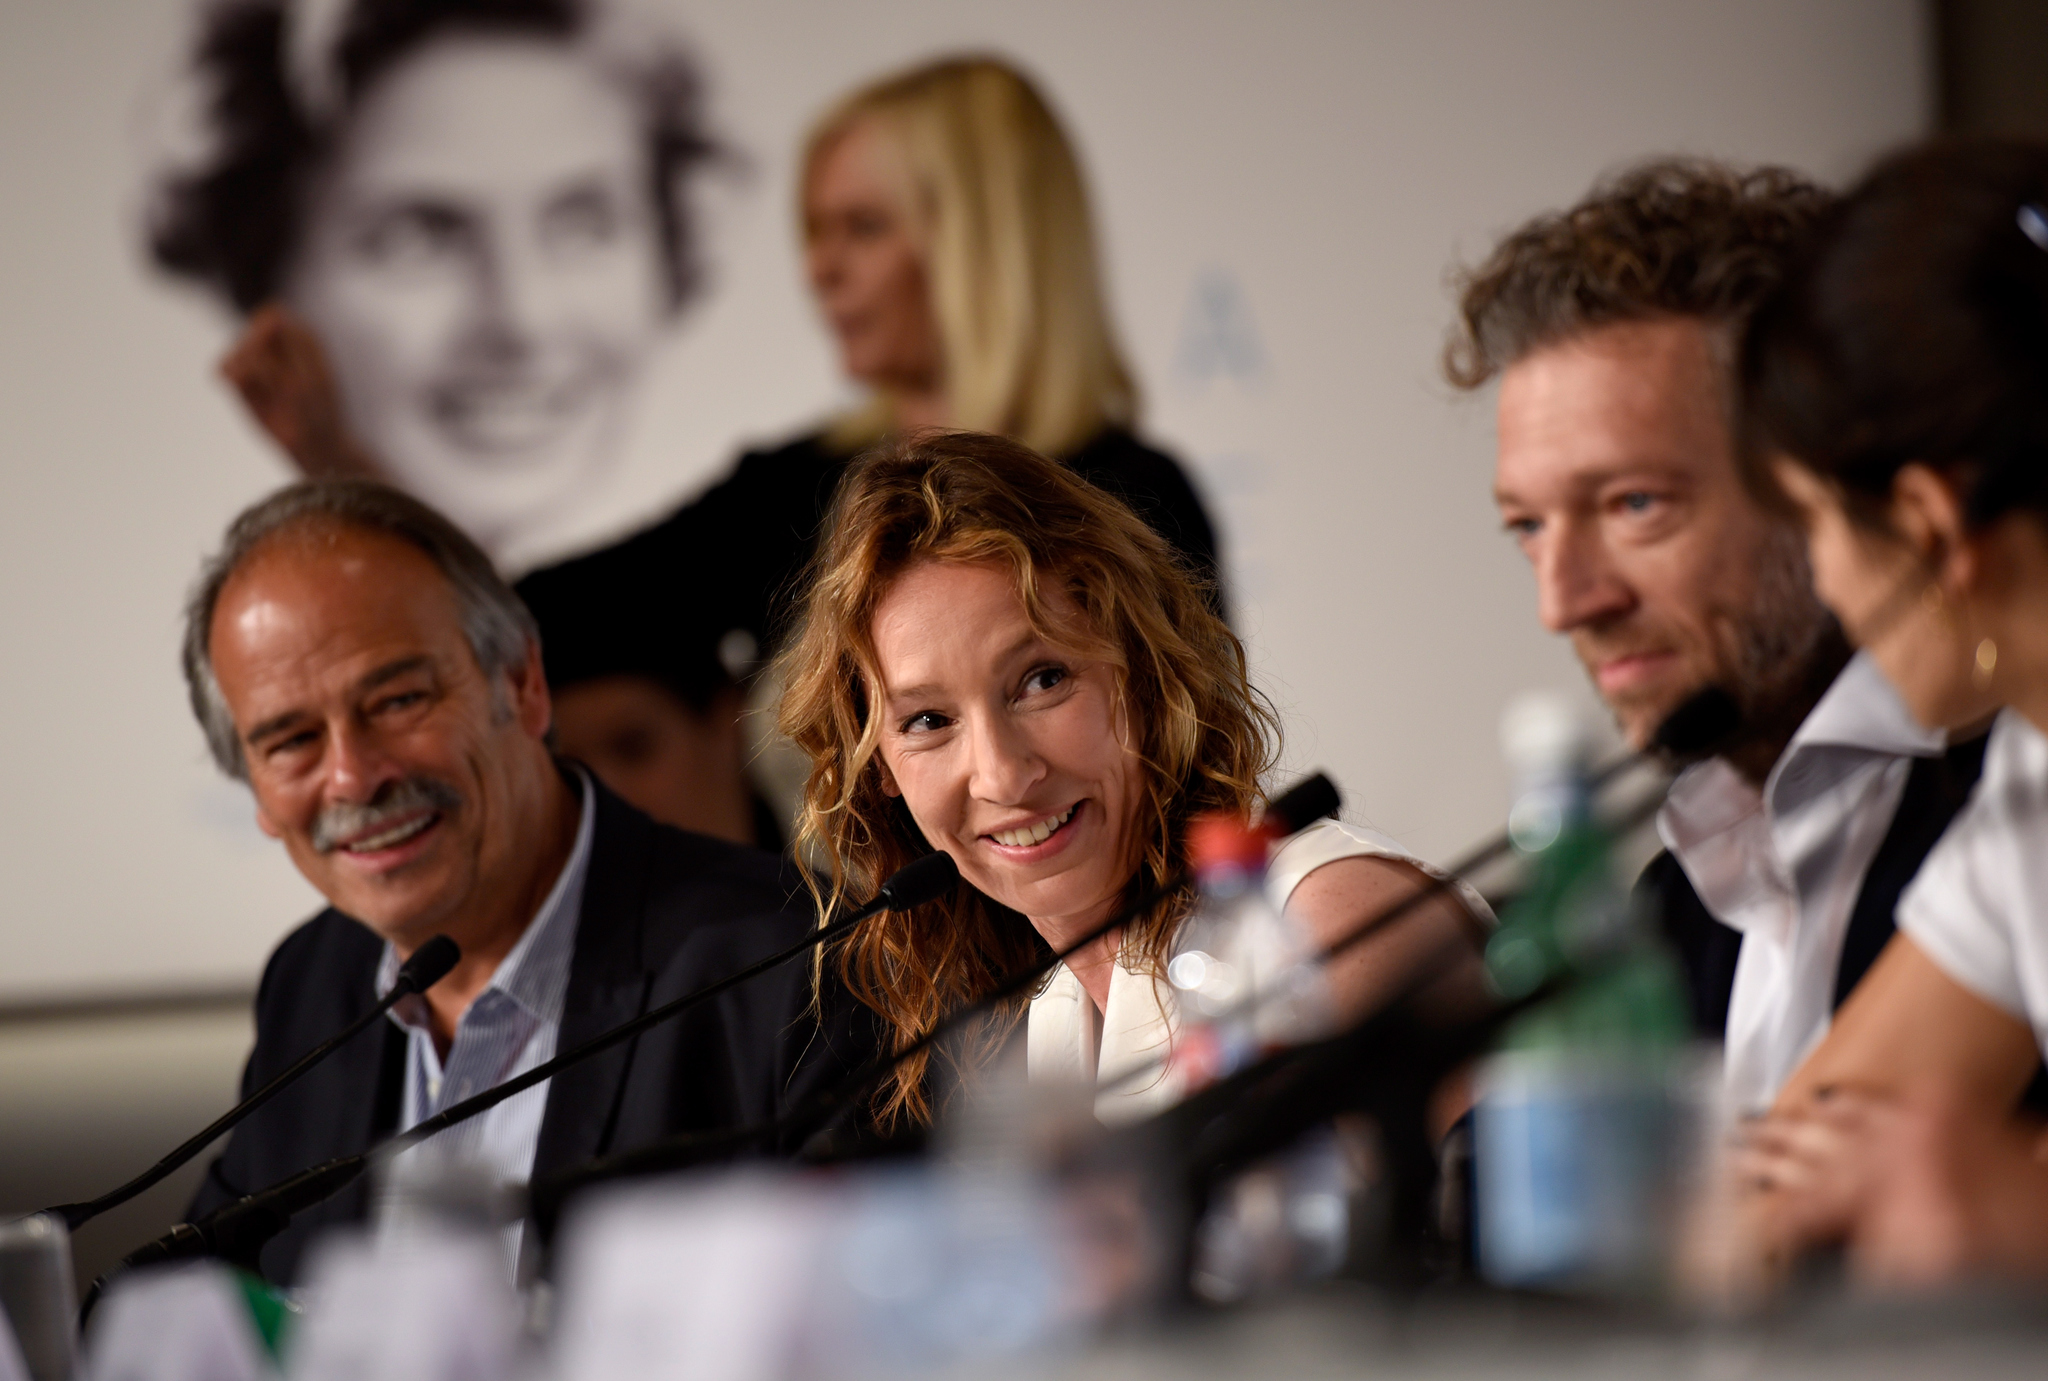 Vincent Cassel, Emmanuelle Bercot and Jean-Pierre Lavoignat at event of Mon roi (2015)